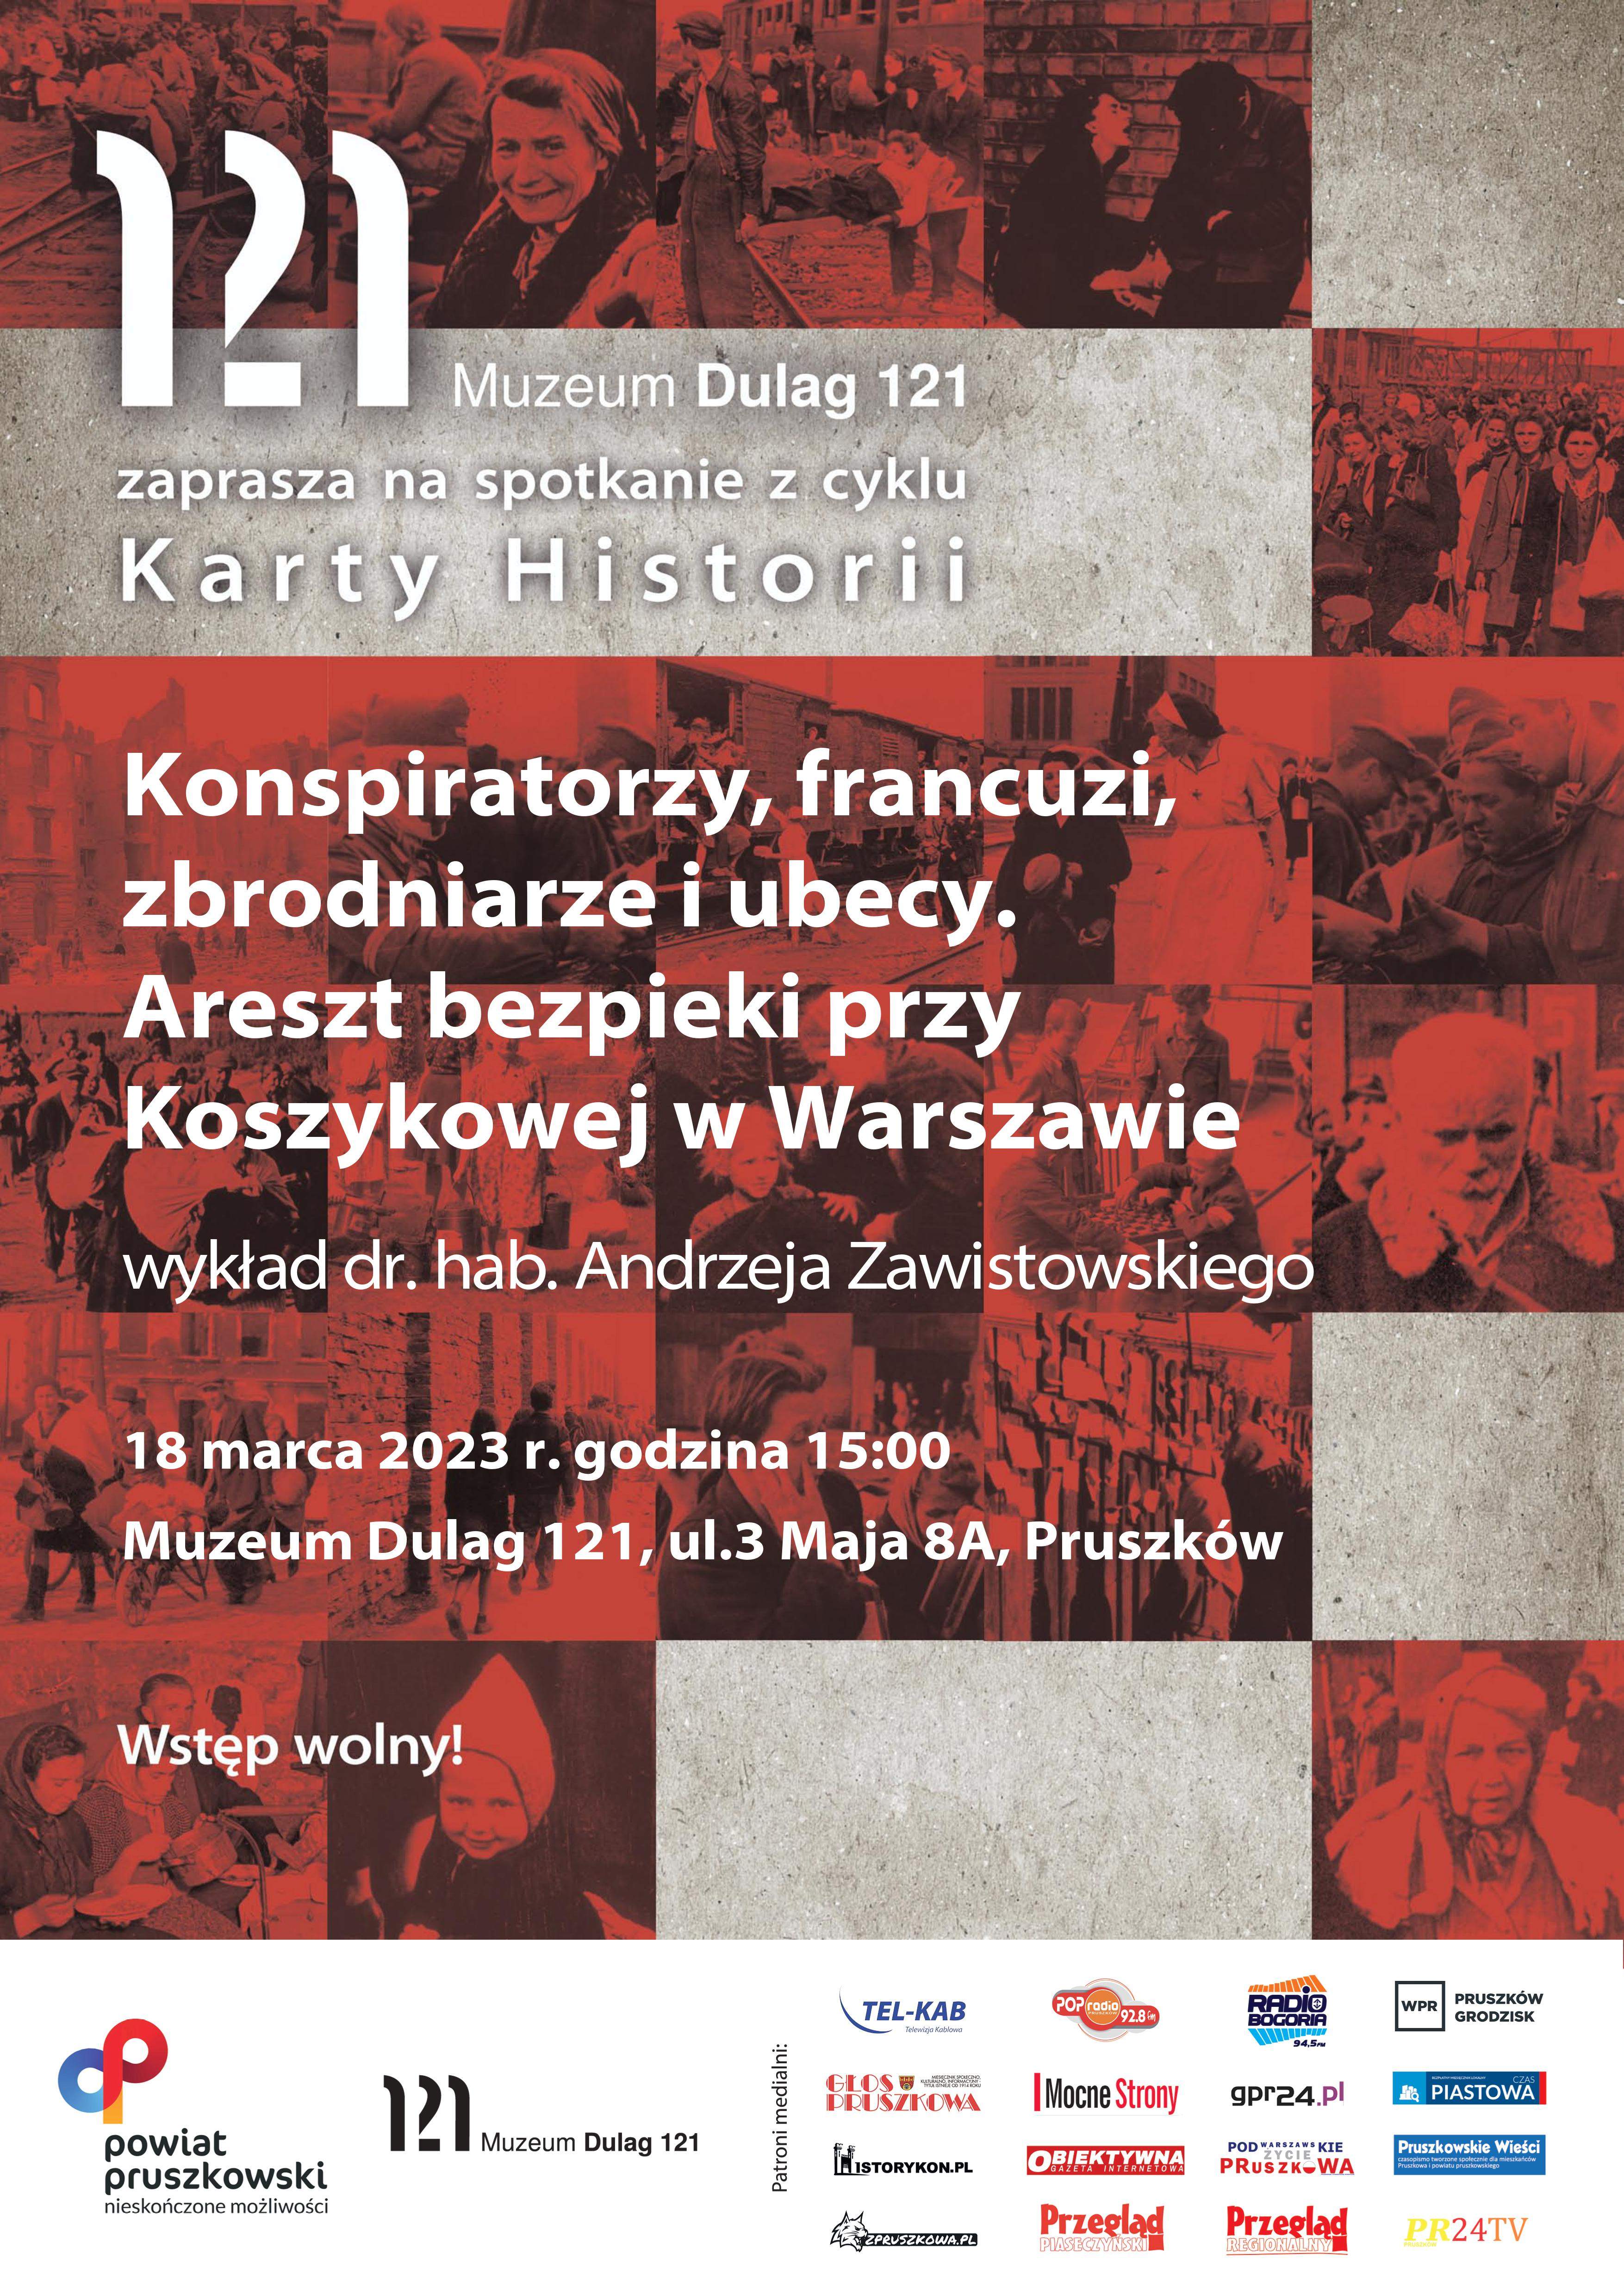 18 marca 2023 r. o godz. 15.00 zapraszamy na wykład "Konspiratorzy, francuzi, zbrodniarze i ubecy. Areszt bezpieki przy Koszykowej w Warszawie"